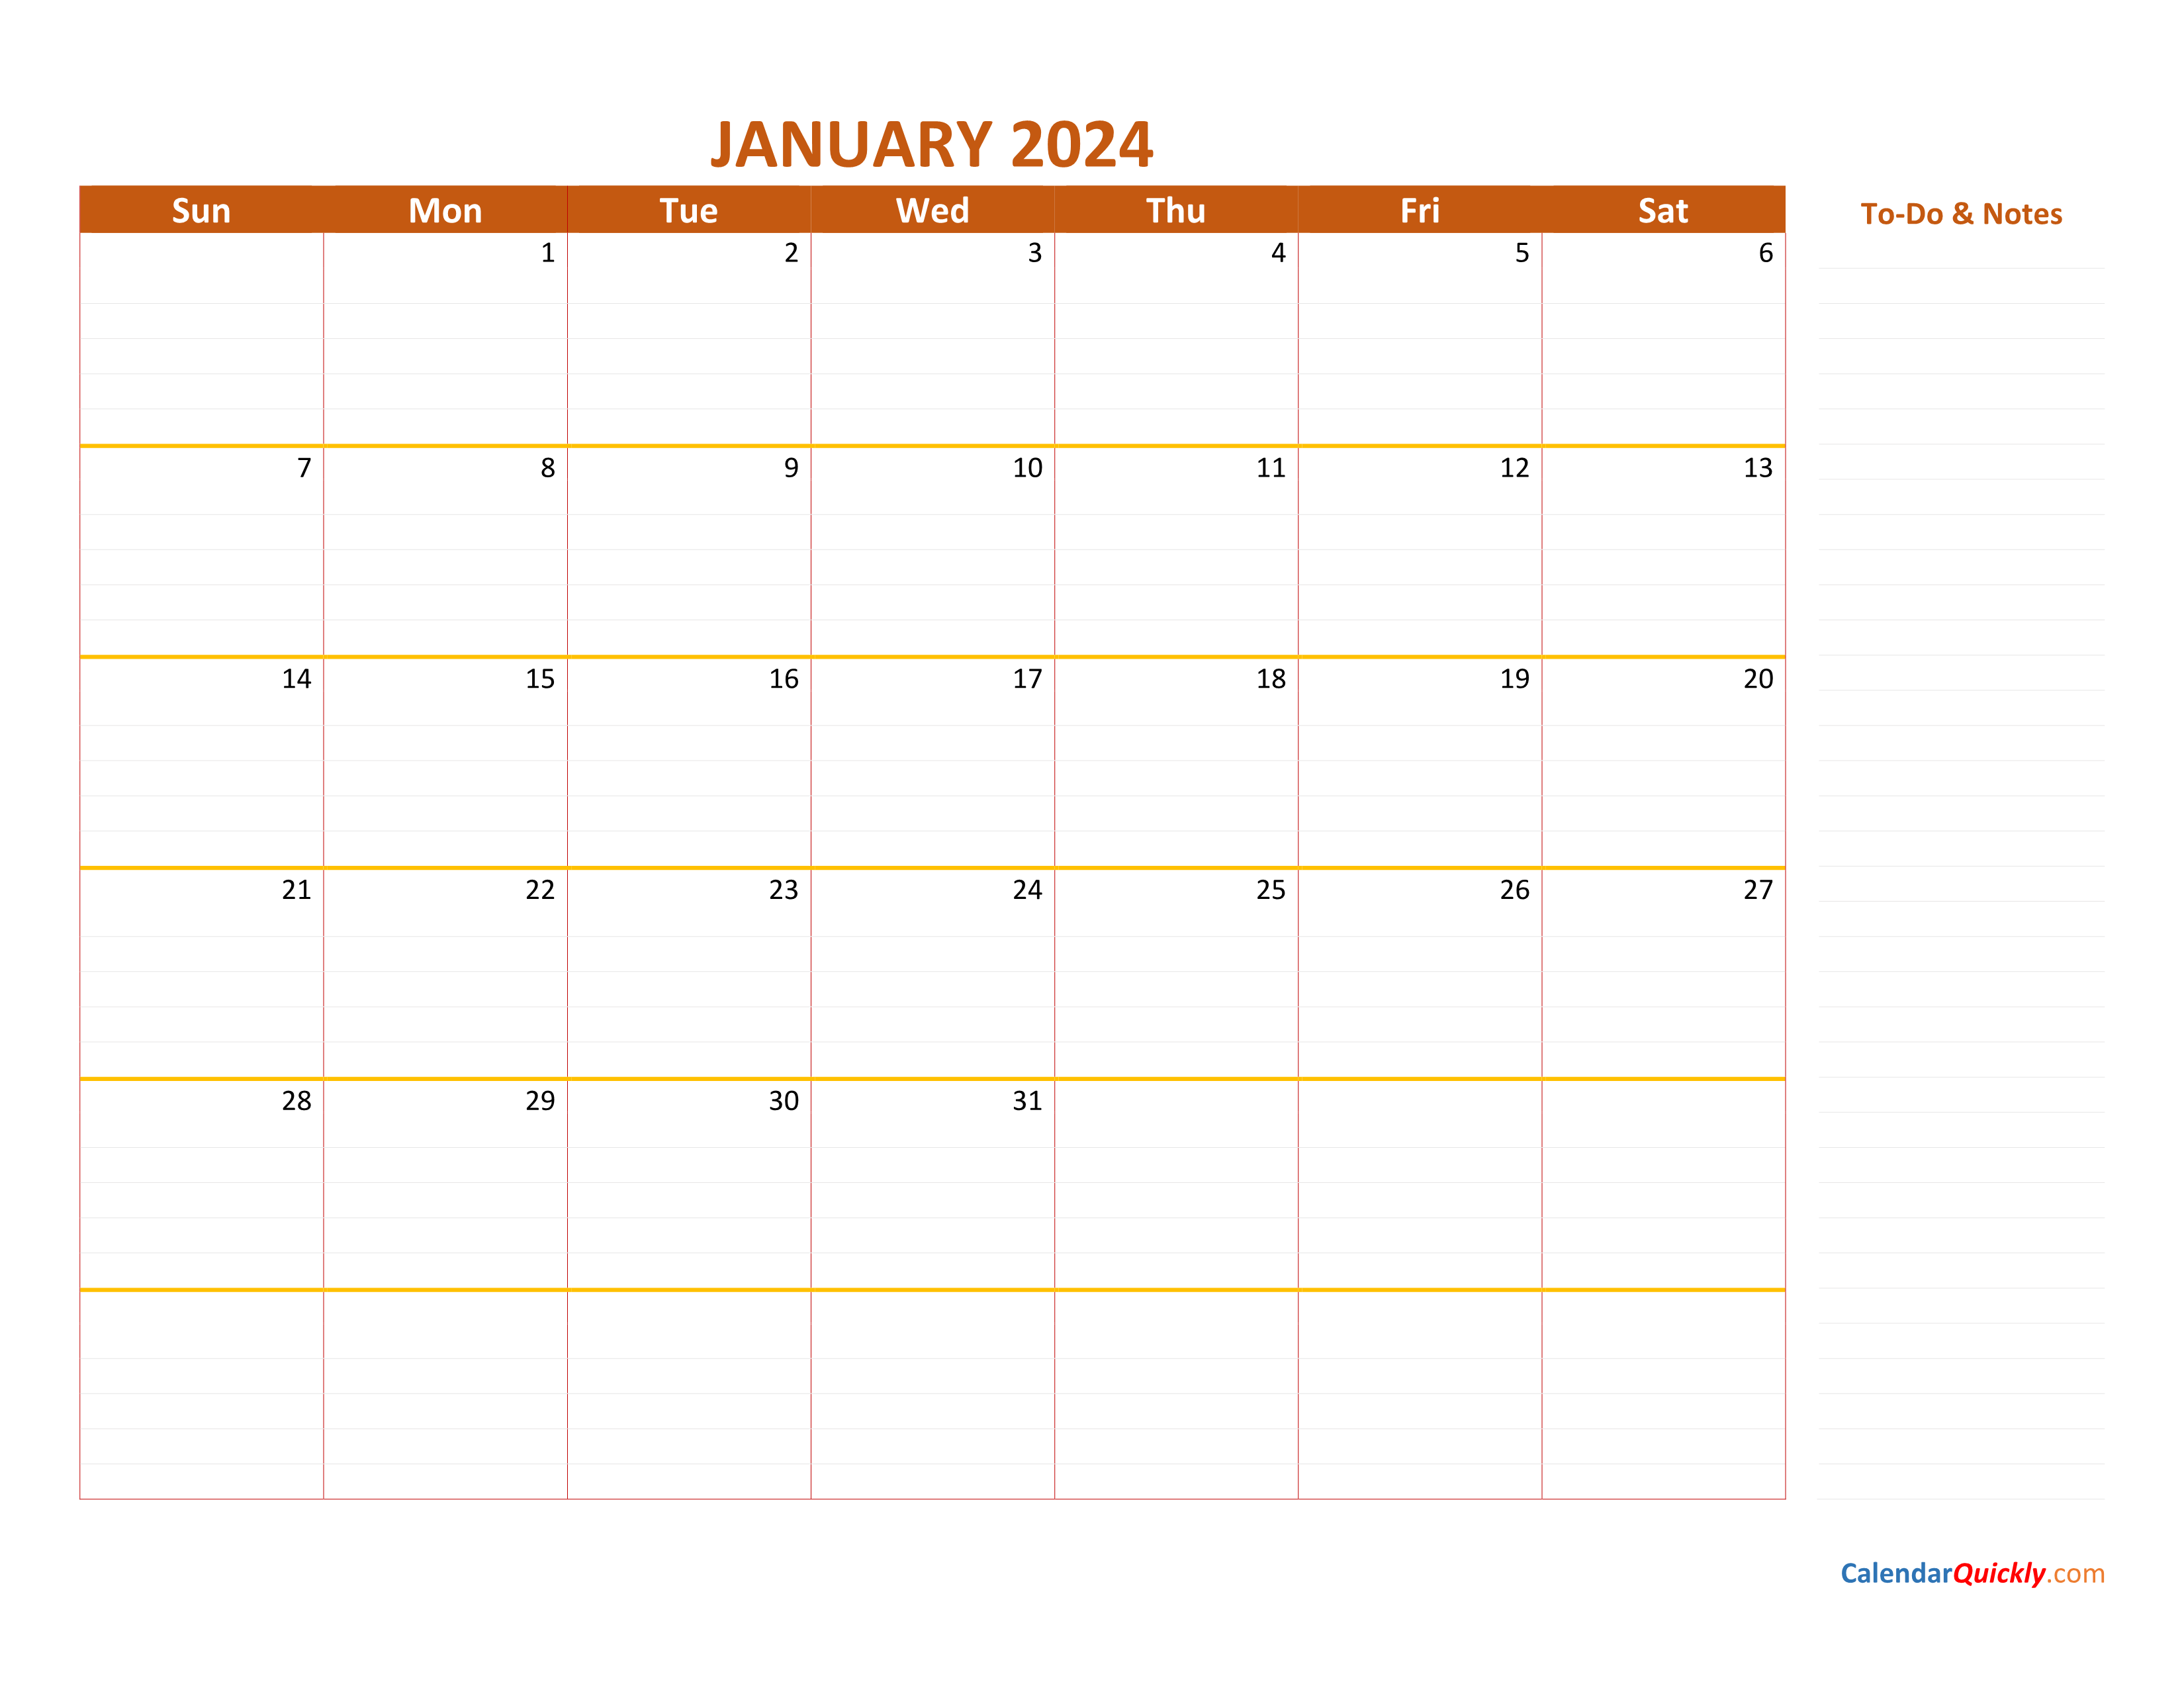 January 2024 Calendar | Calendar Quickly